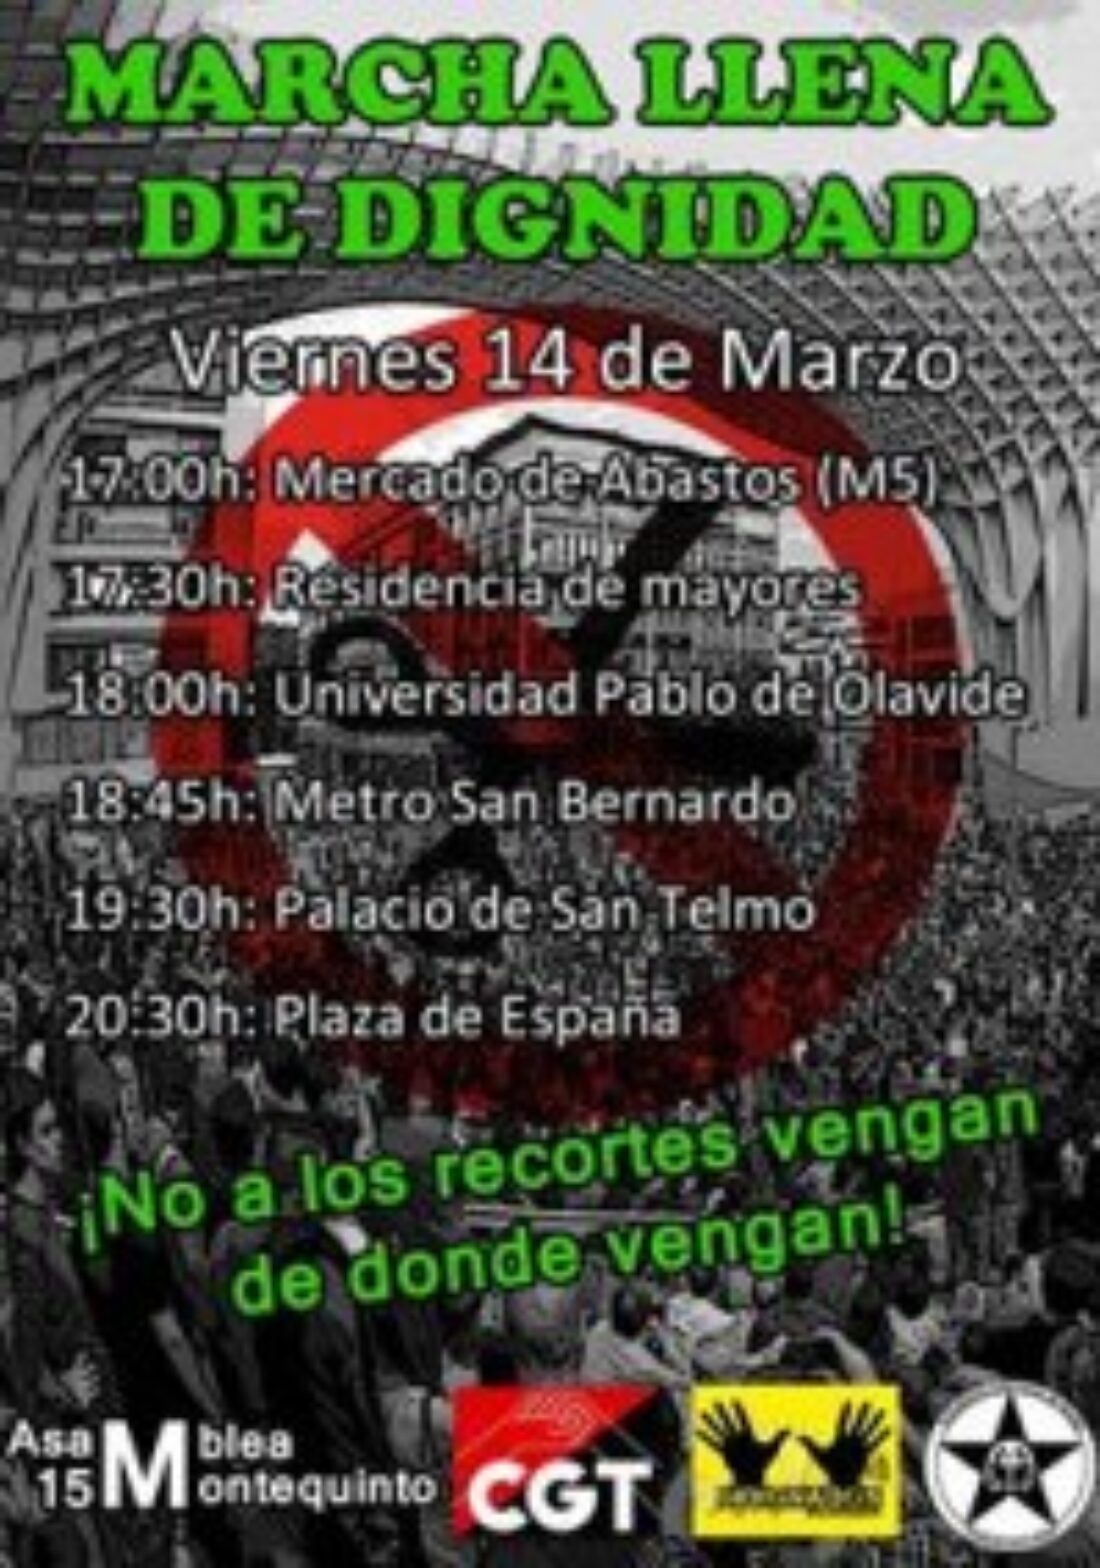 El 14 de marzo empieza la Marcha llena de Dignidad en Sevilla